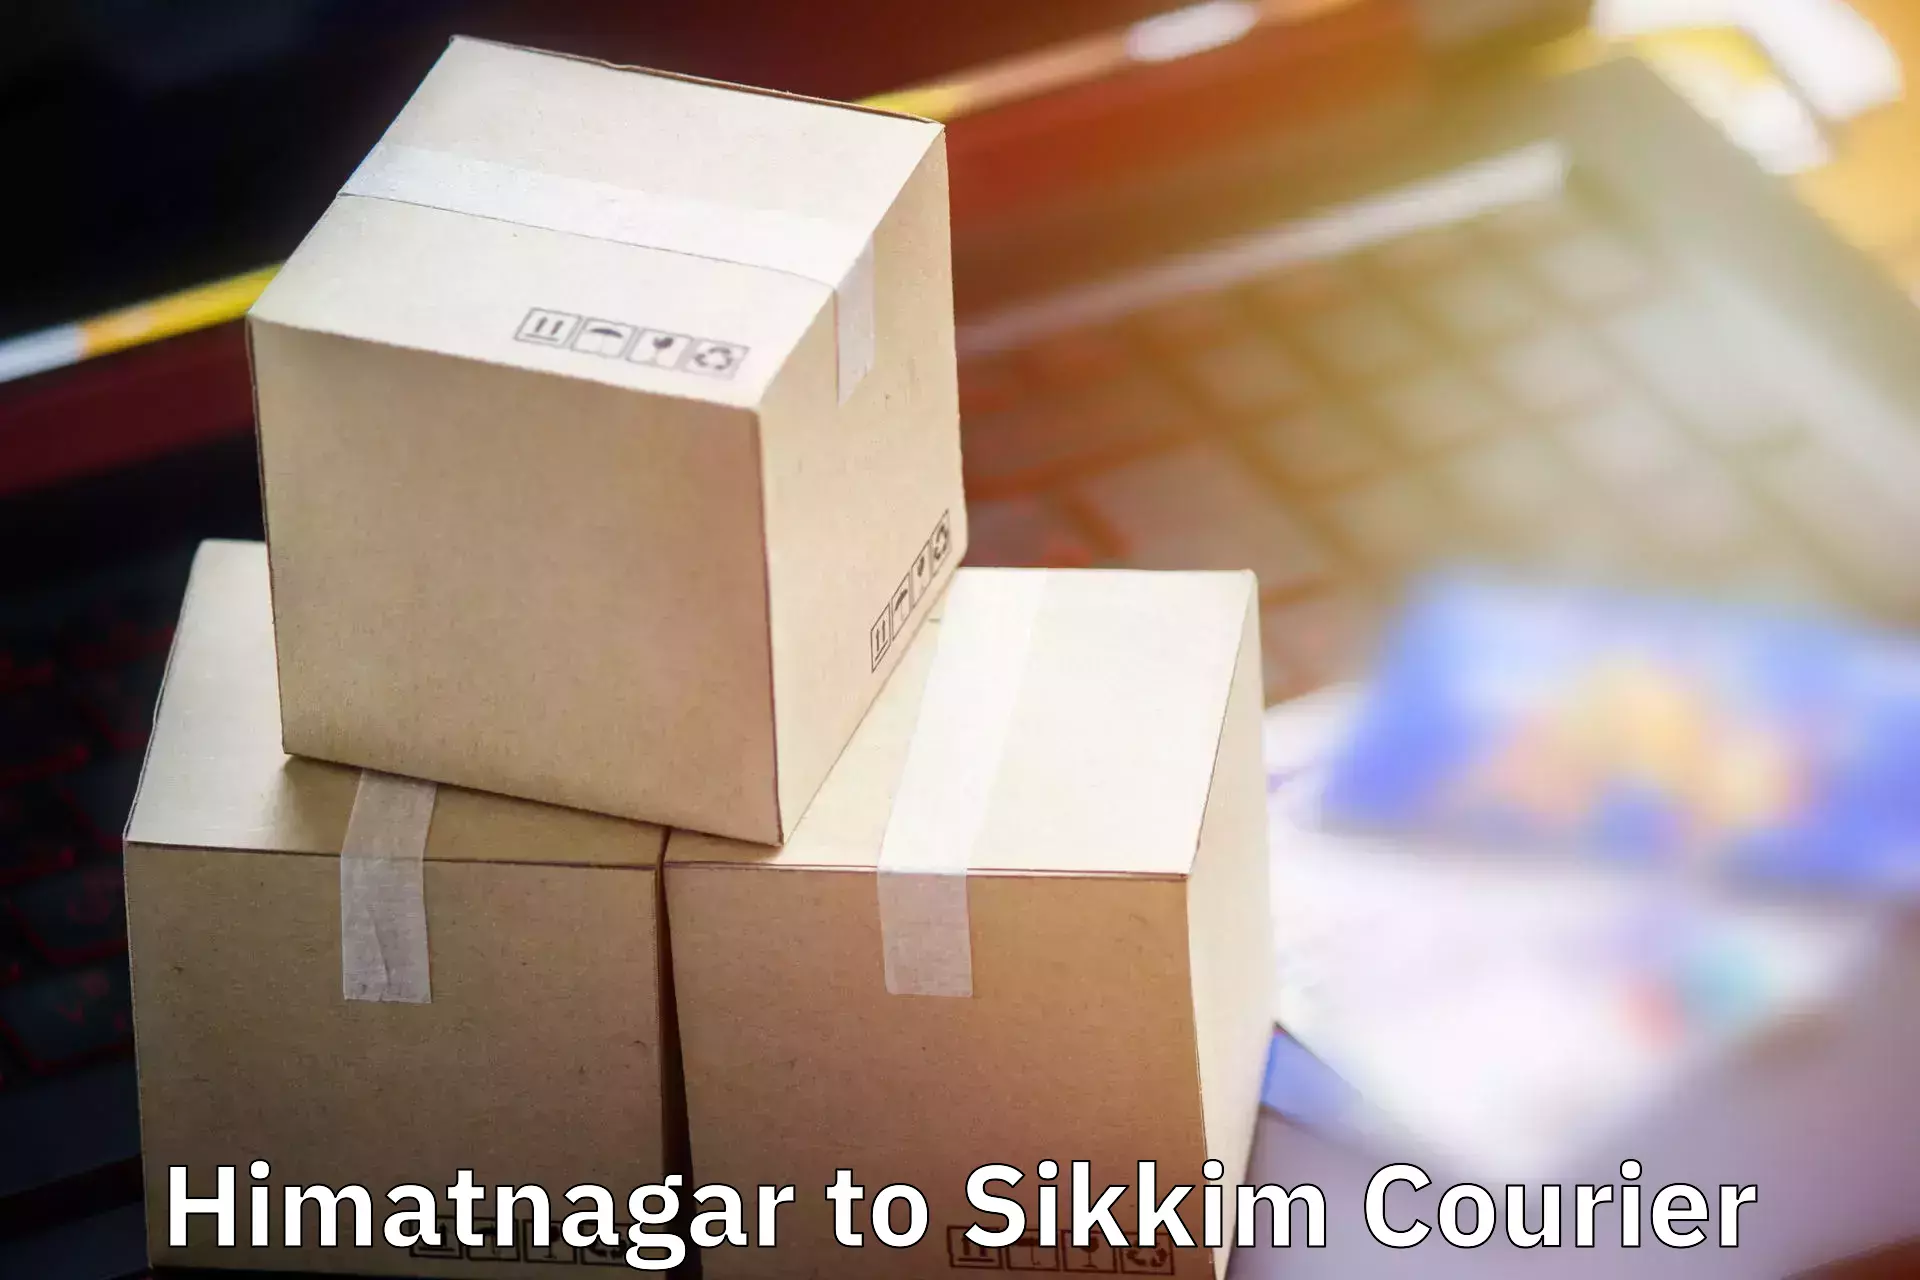 Baggage relocation service Himatnagar to Mangan